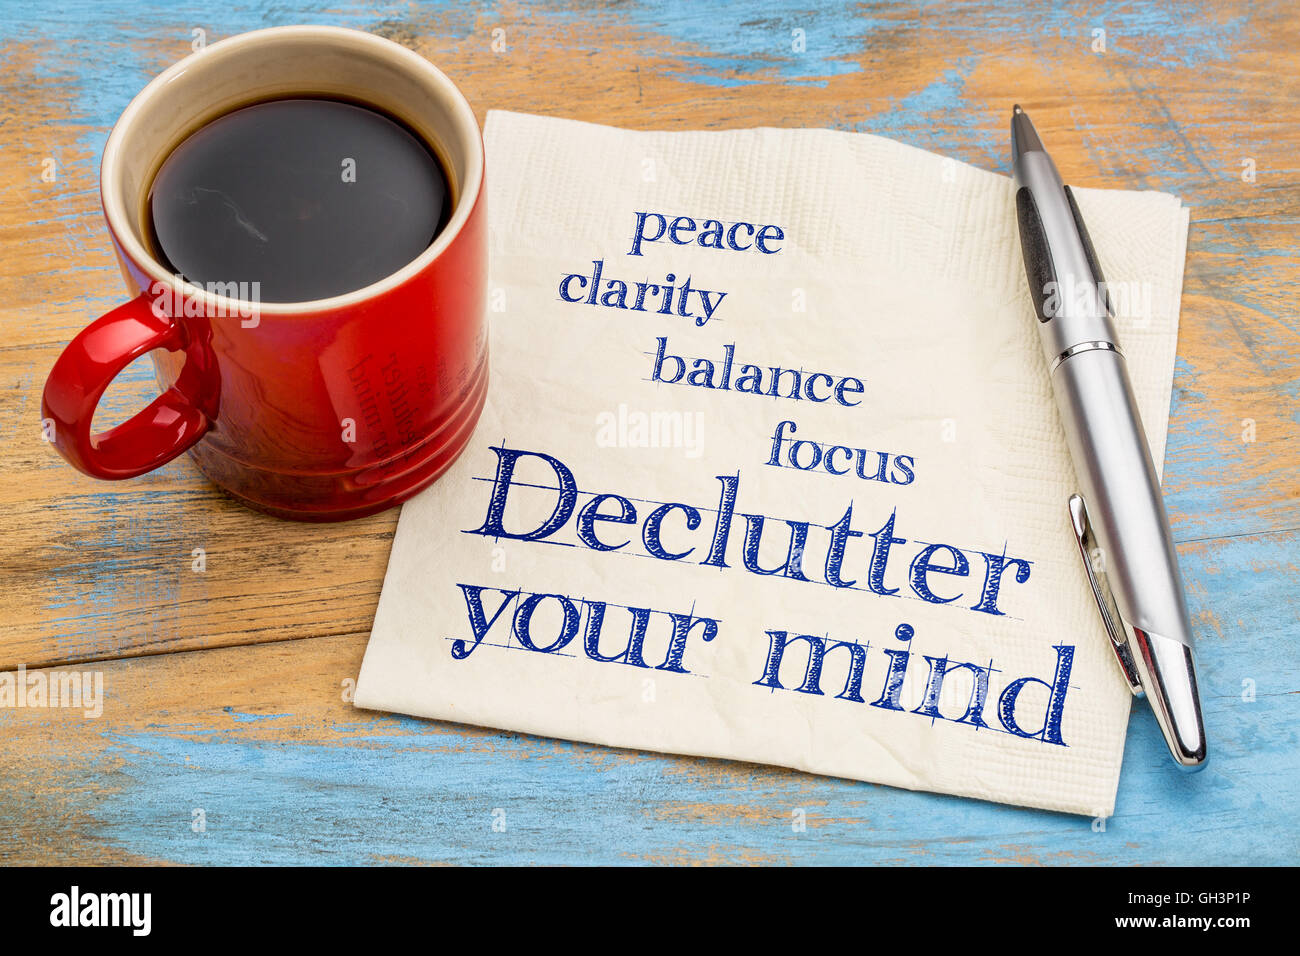 Ordene su mente para la claridad, la paz, el enfoque y el balance - escritura en una servilleta con una taza de café espresso Foto de stock